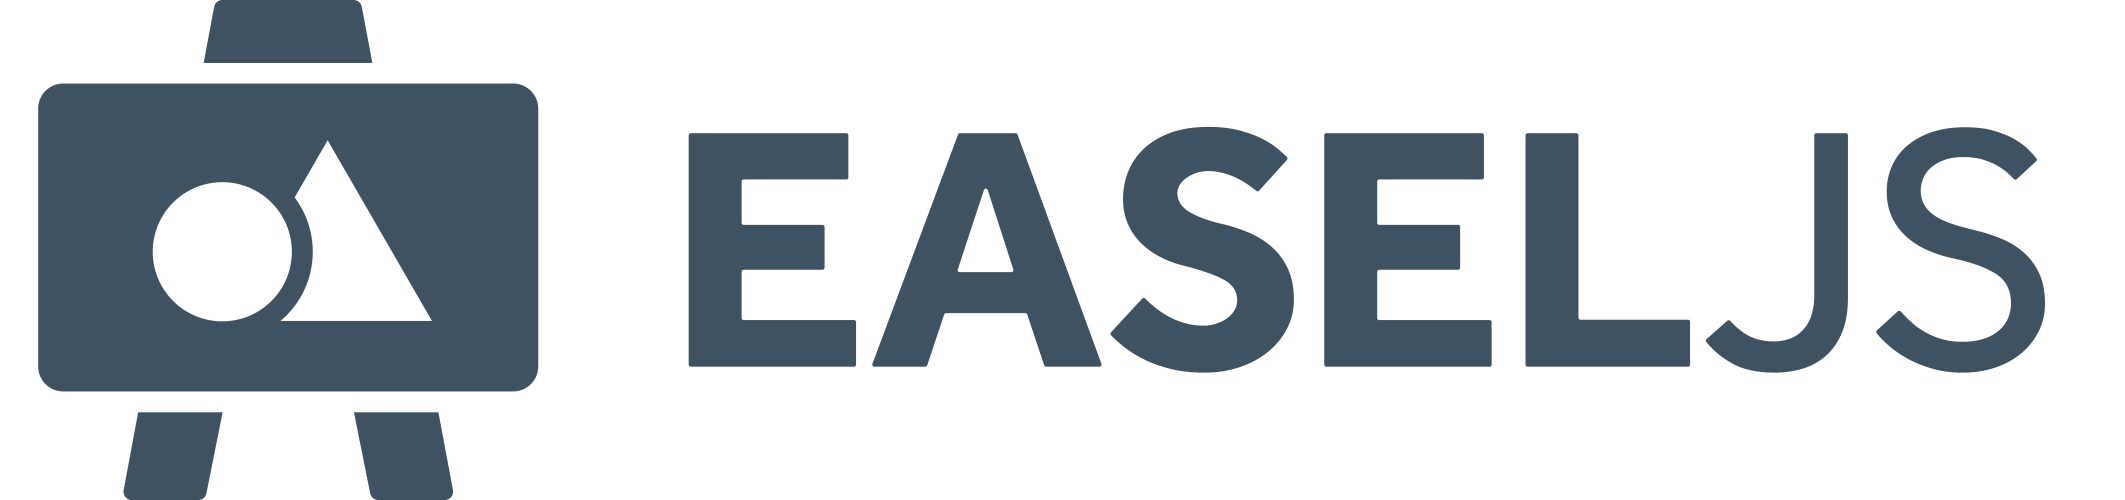 easeljs logo